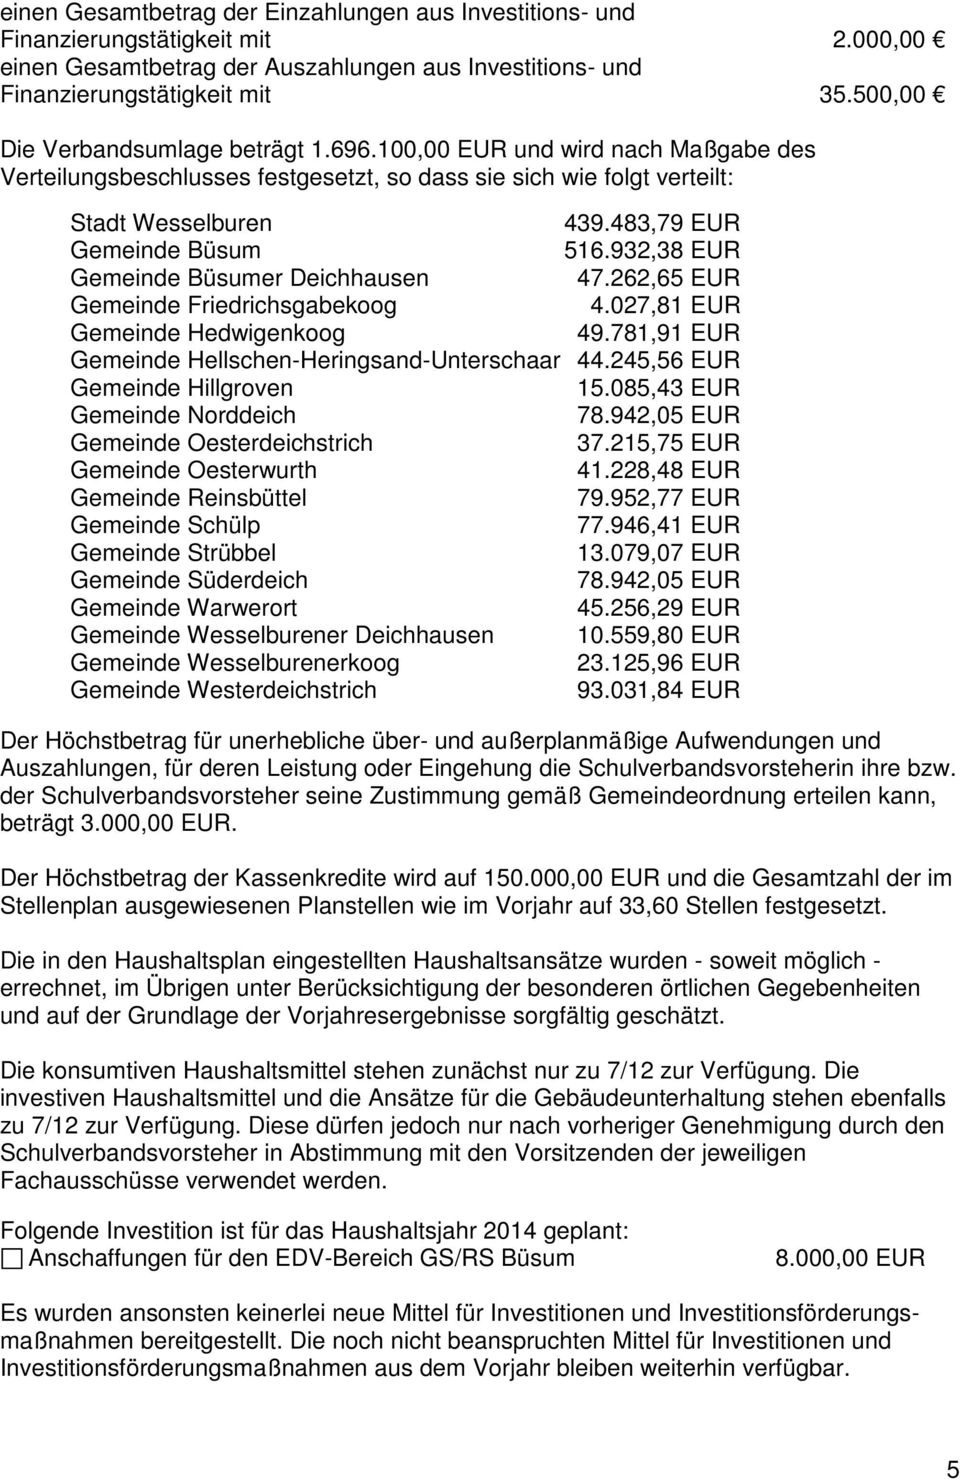 483,79 EUR Gemeinde Büsum 516.932,38 EUR Gemeinde Büsumer Deichhausen 47.262,65 EUR Gemeinde Friedrichsgabekoog 4.027,81 EUR Gemeinde Hedwigenkoog 49.